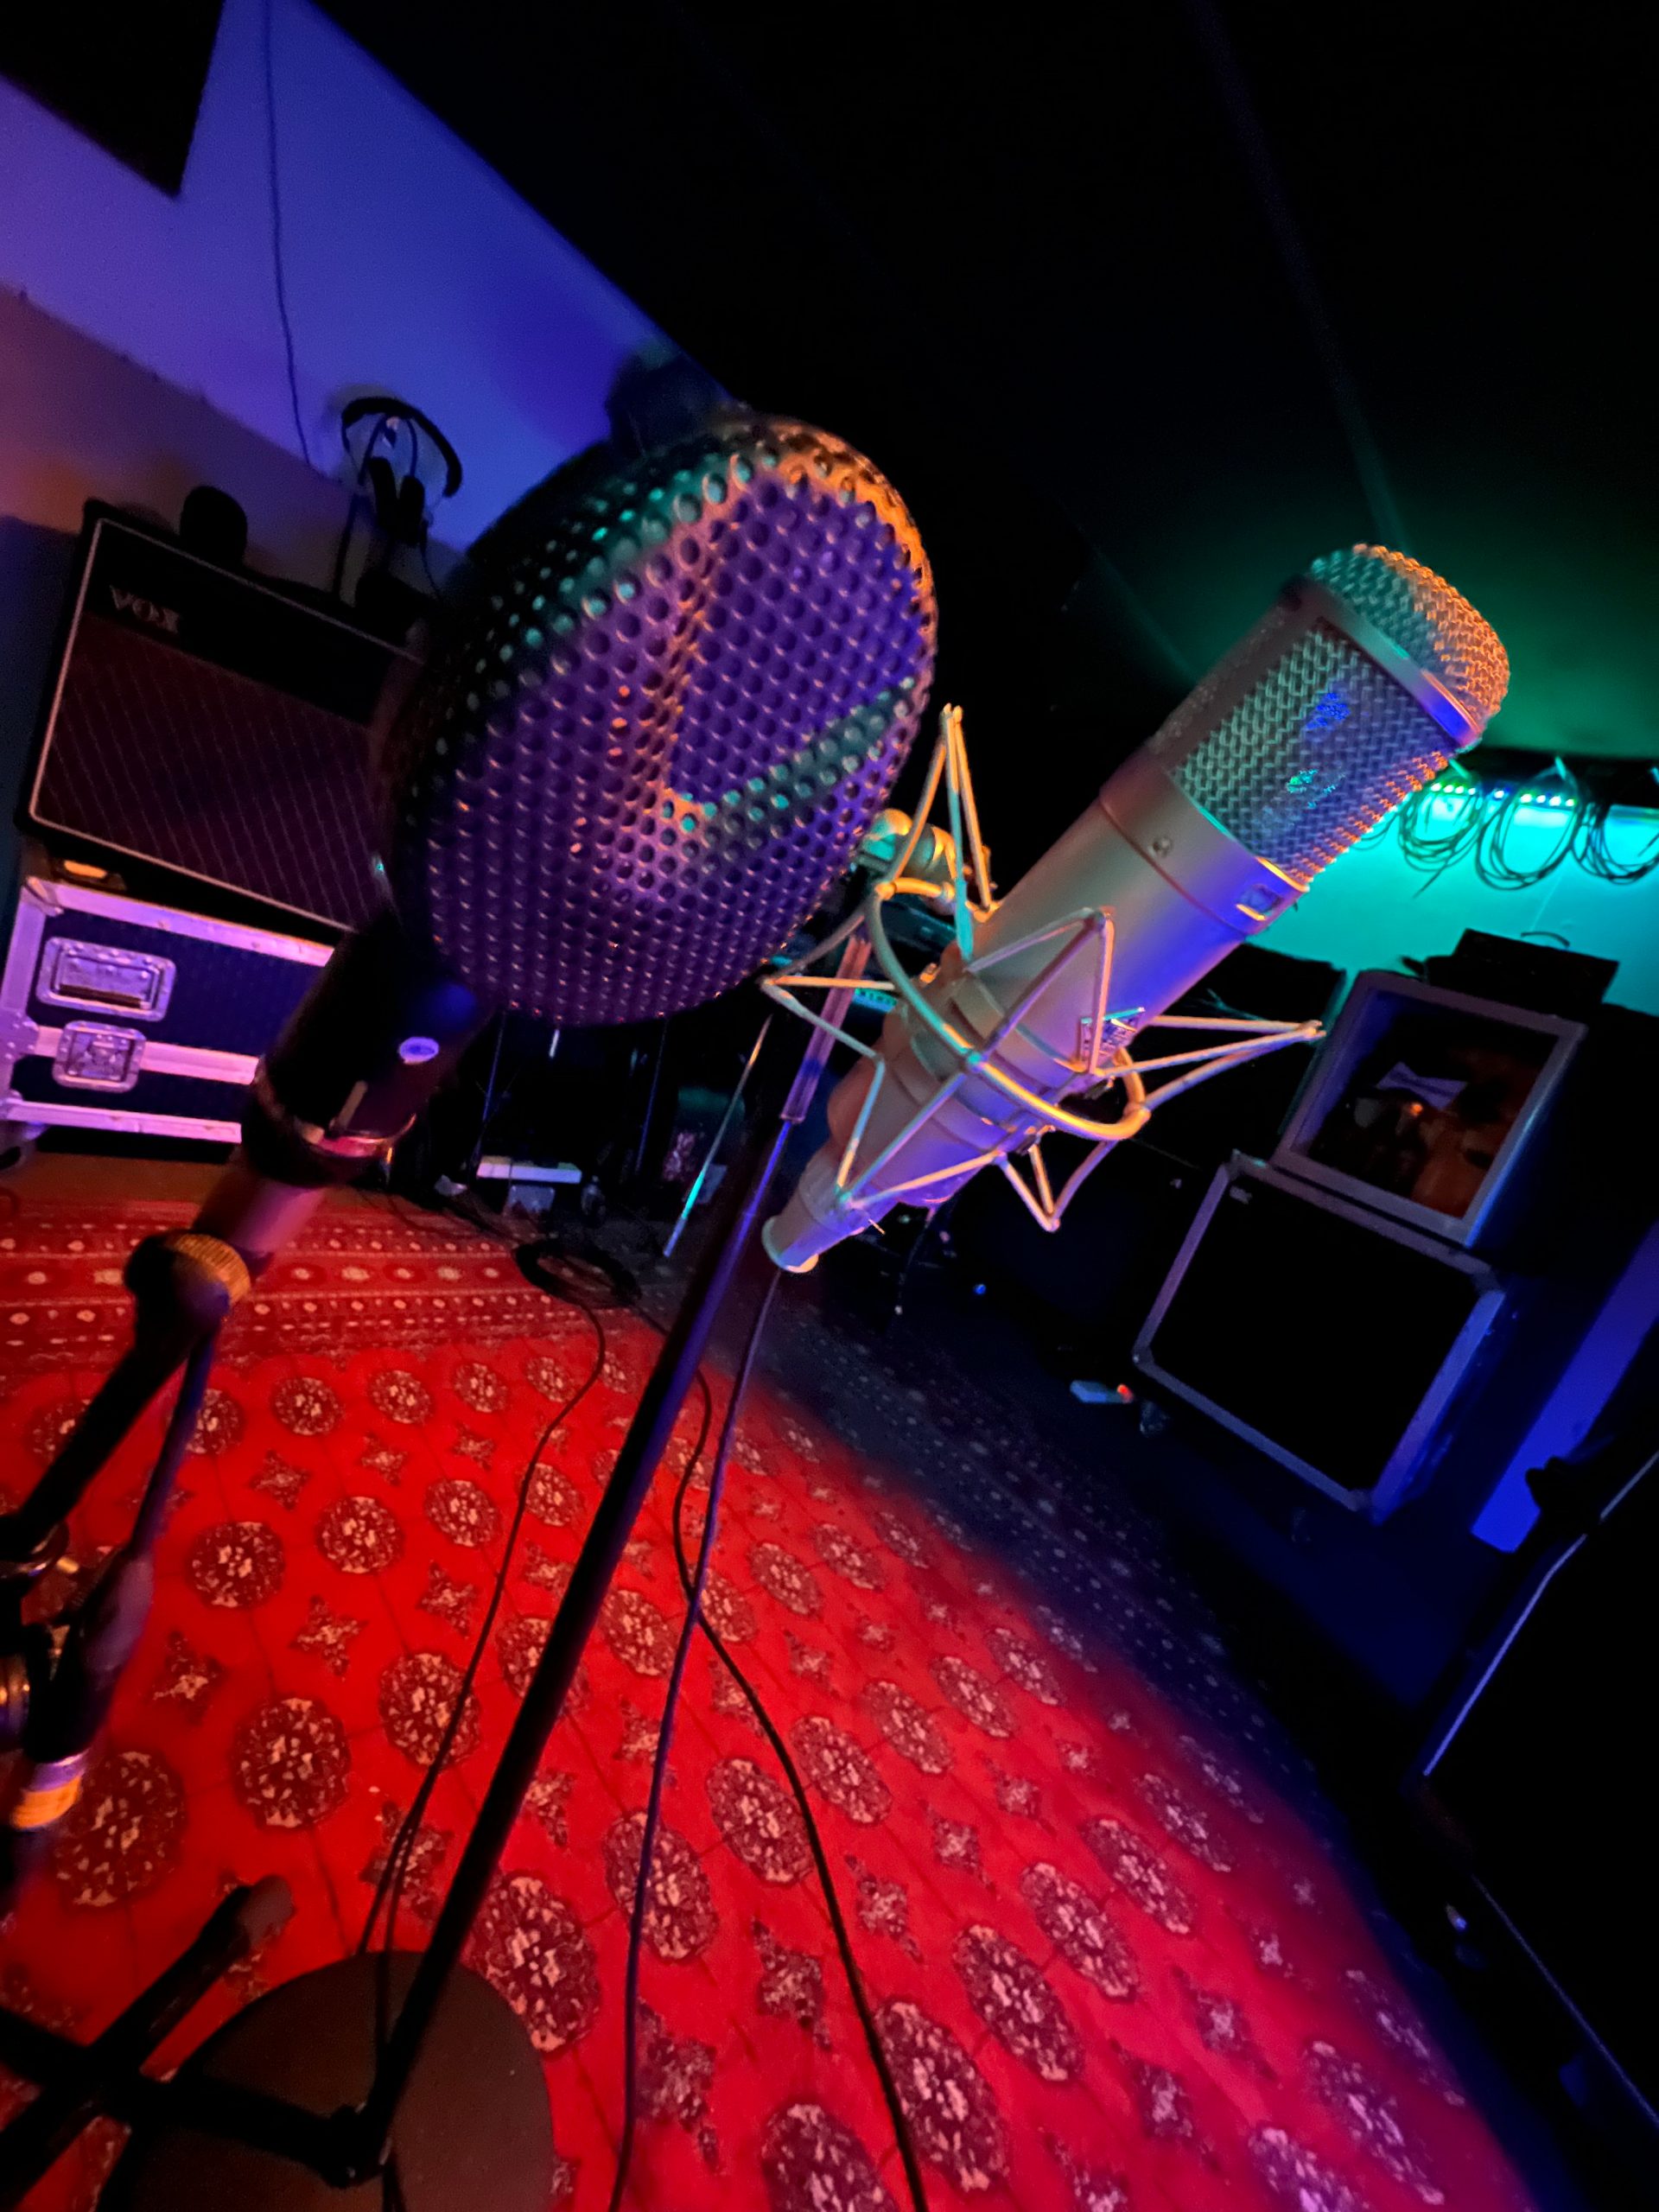 Hicaz Recording Studio